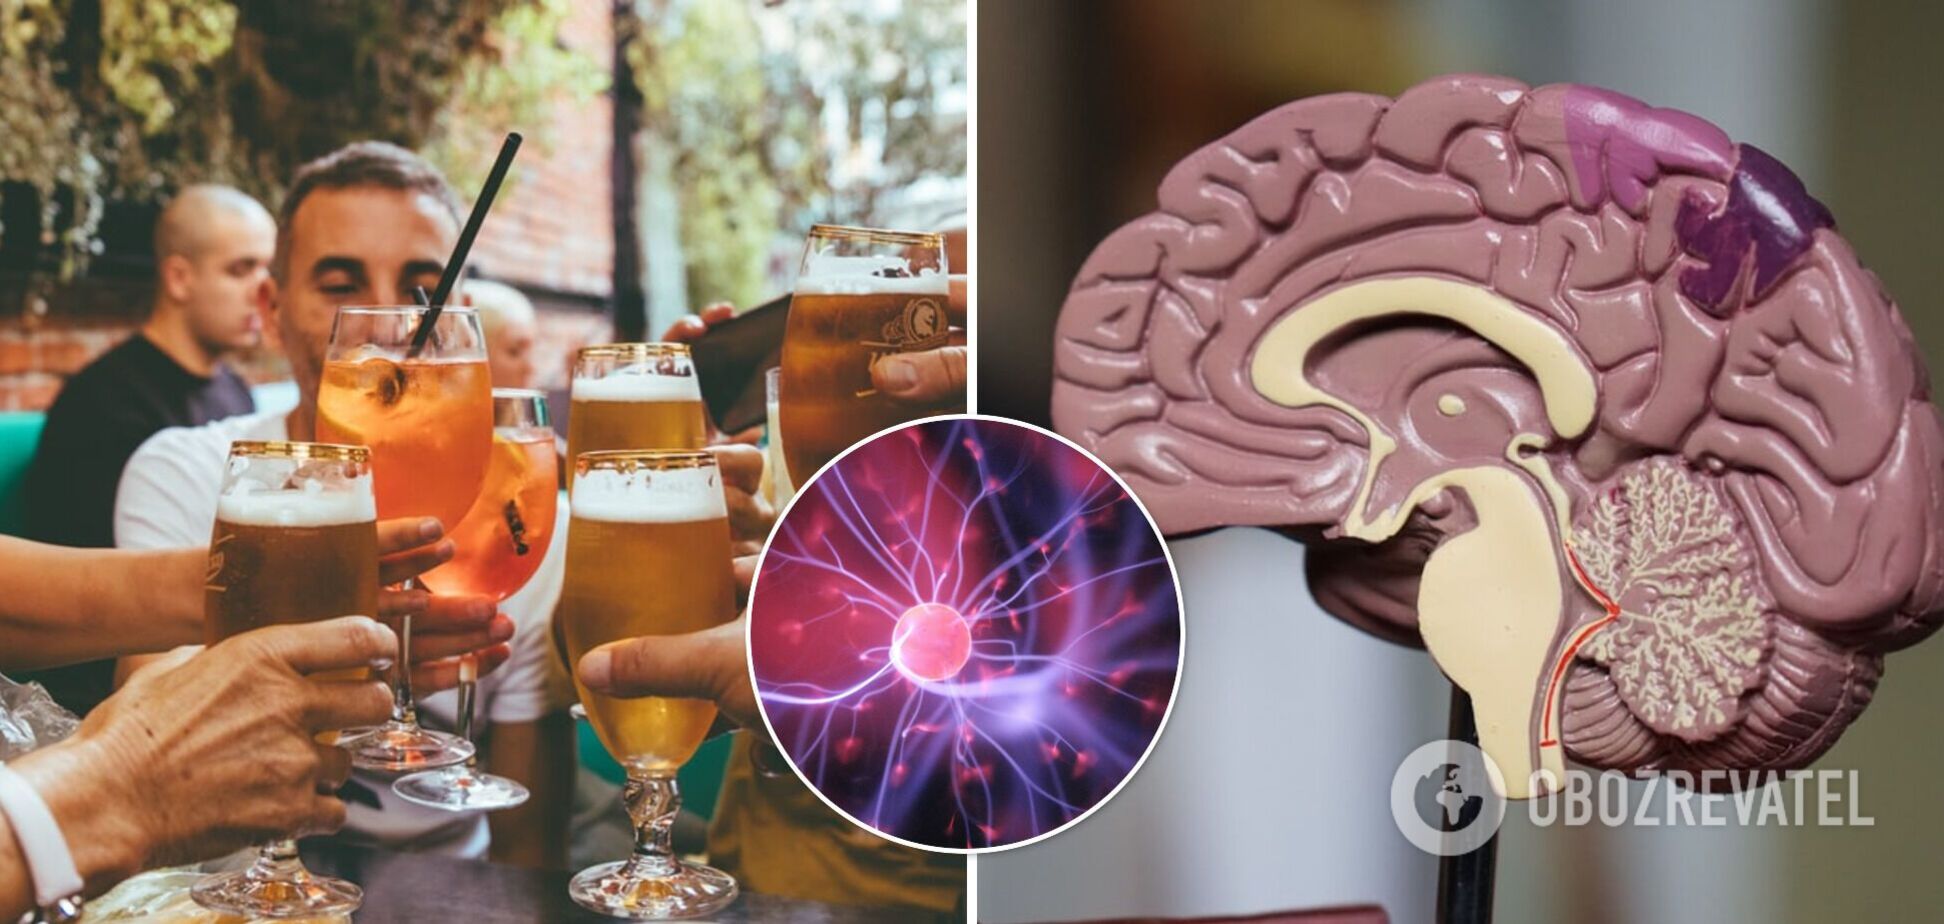 Ученые рассказали, как употребление алкоголя может влиять на работу мозга